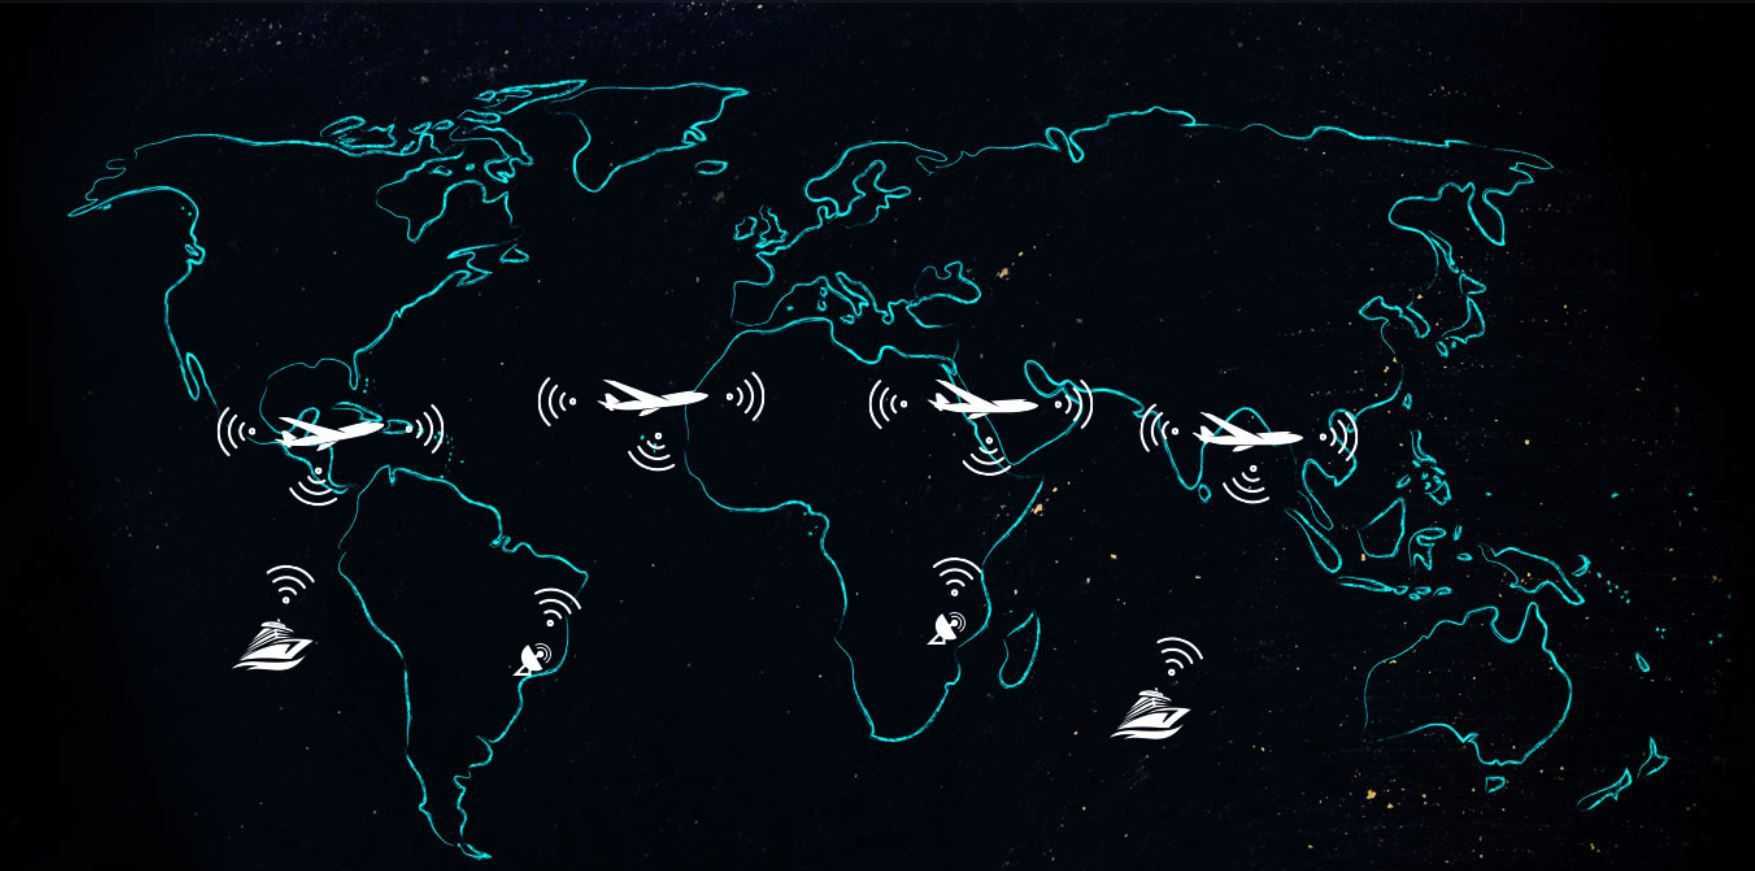 Цифровая авиамагистраль накроет Землю интернет-одеялом